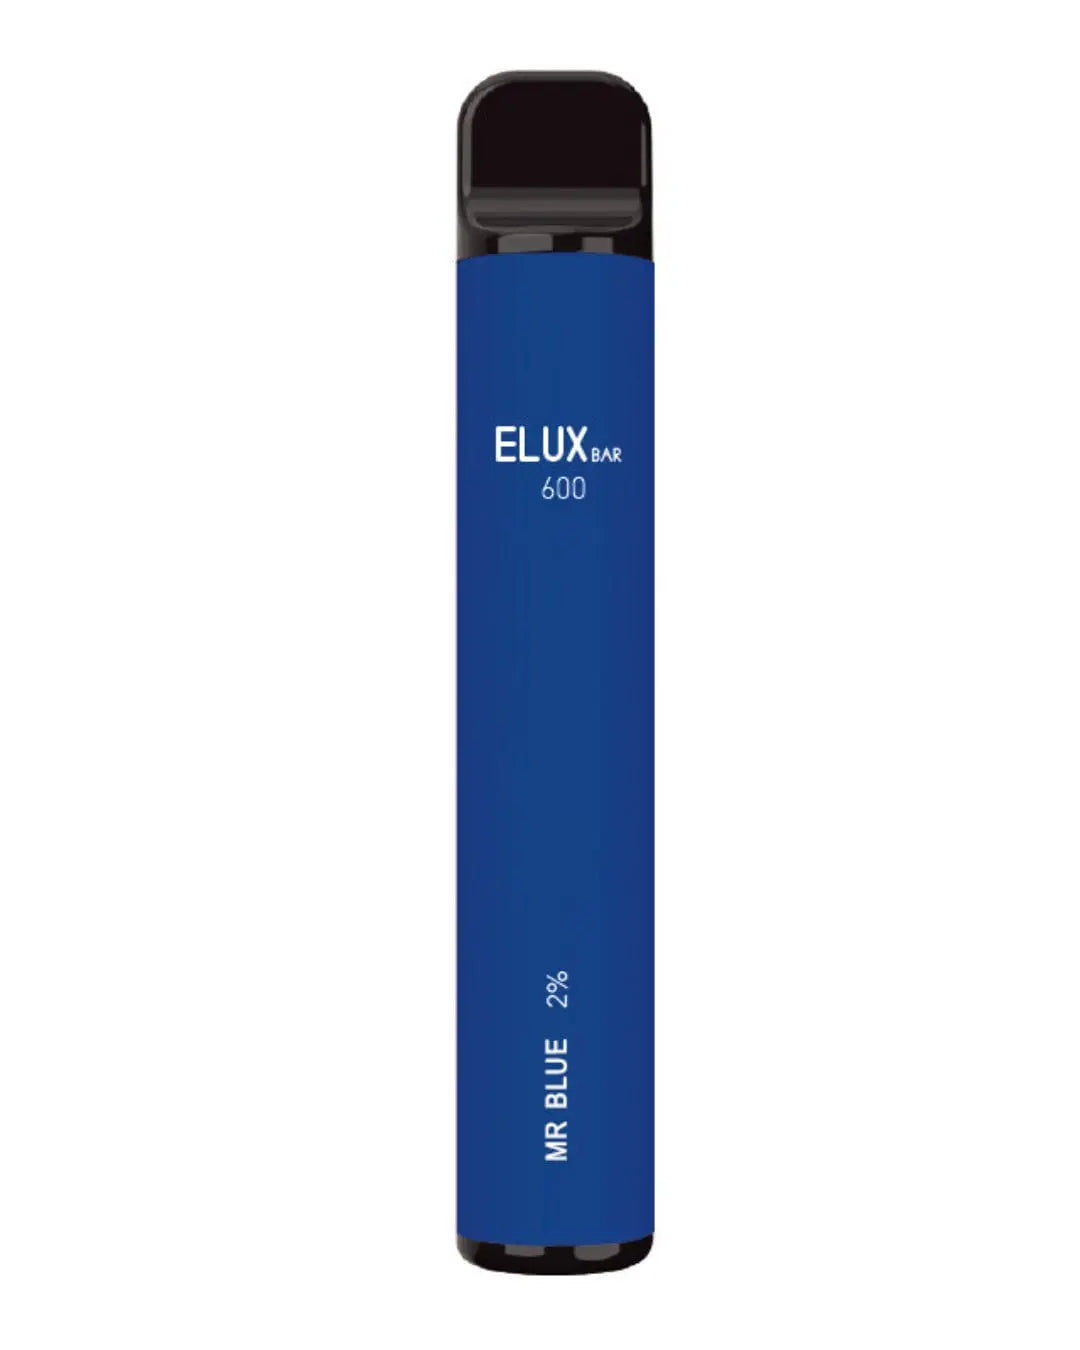 Elux Bar 600 Mr Blue Disposable Vapes